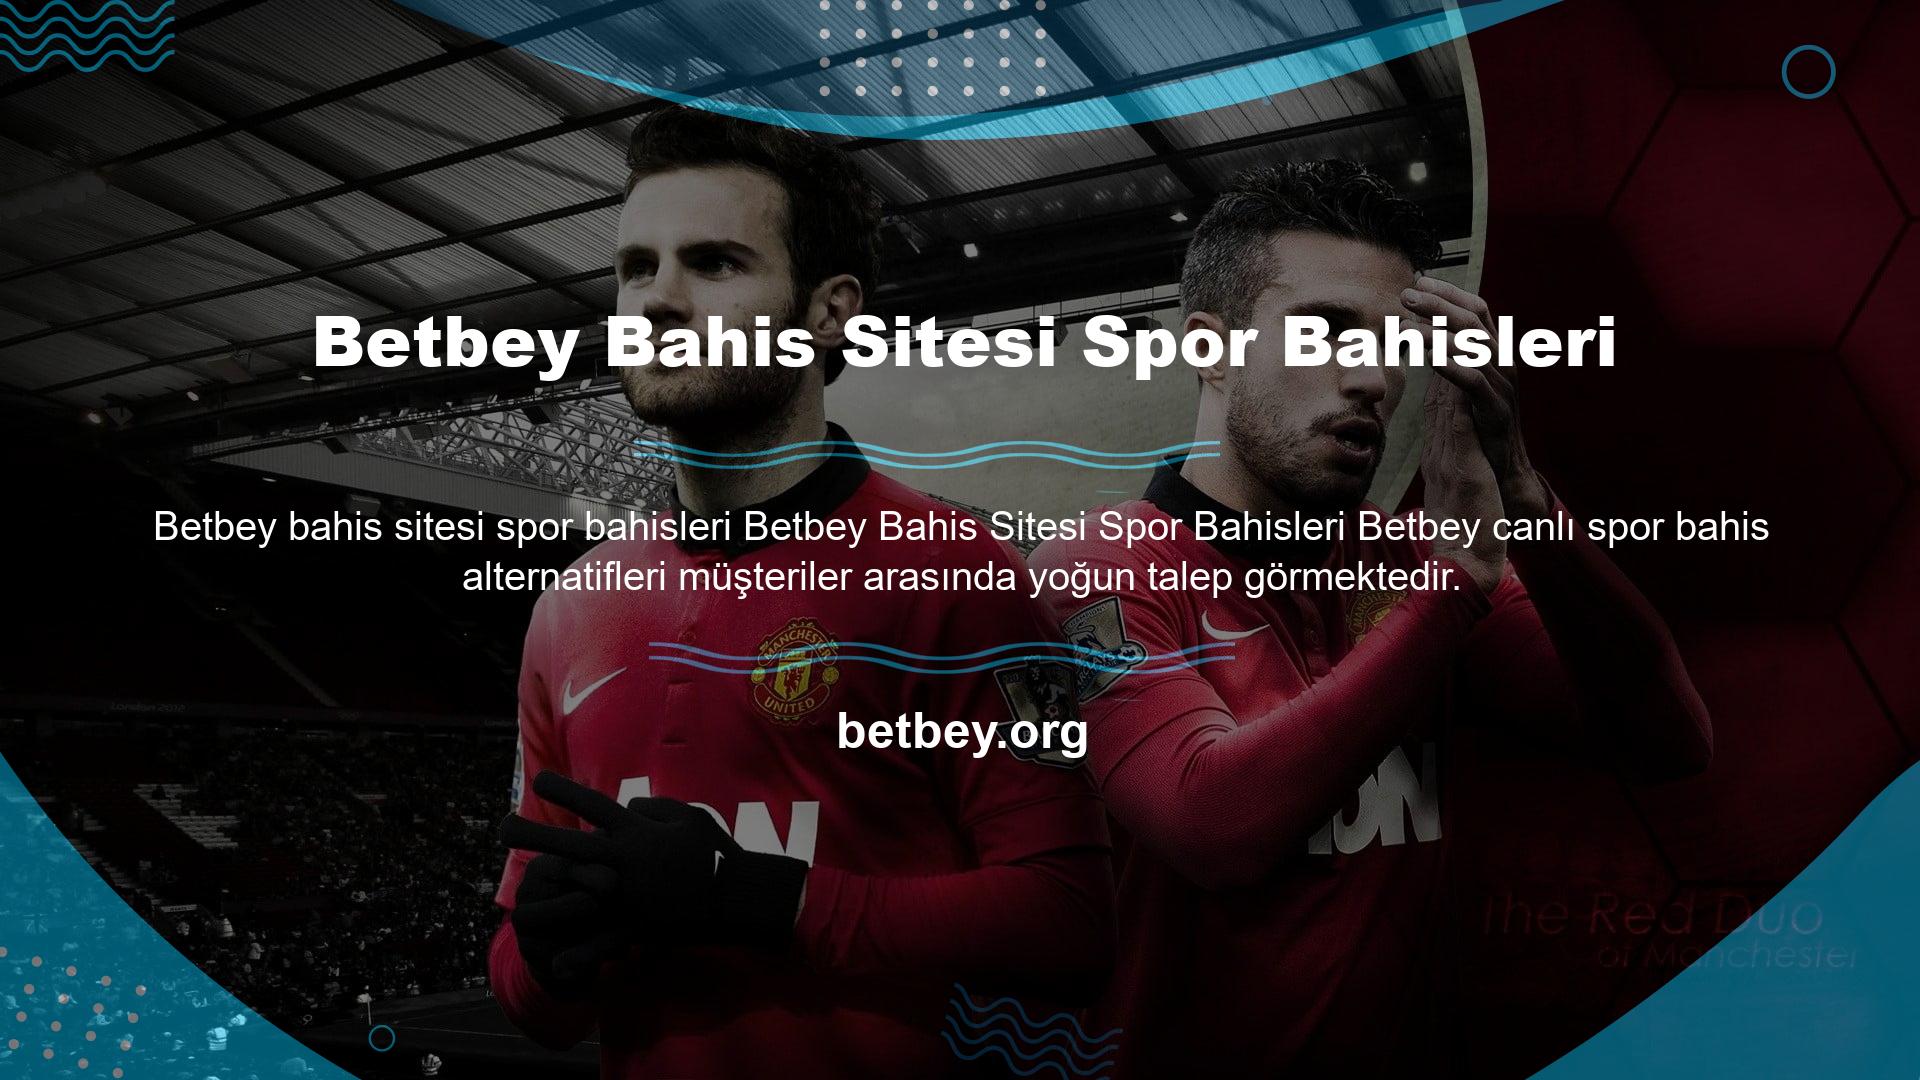 Betbey online bahis sitesinde futbol, ​​basketbol, ​​voleybol gibi tanınmış sporların yanı sıra Türkiye'de yurt dışına açılmaya devam eden canlı bahis siteleri arasında misafirleri için en geniş bahis yelpazesini yayınlayan ofislerden biridir